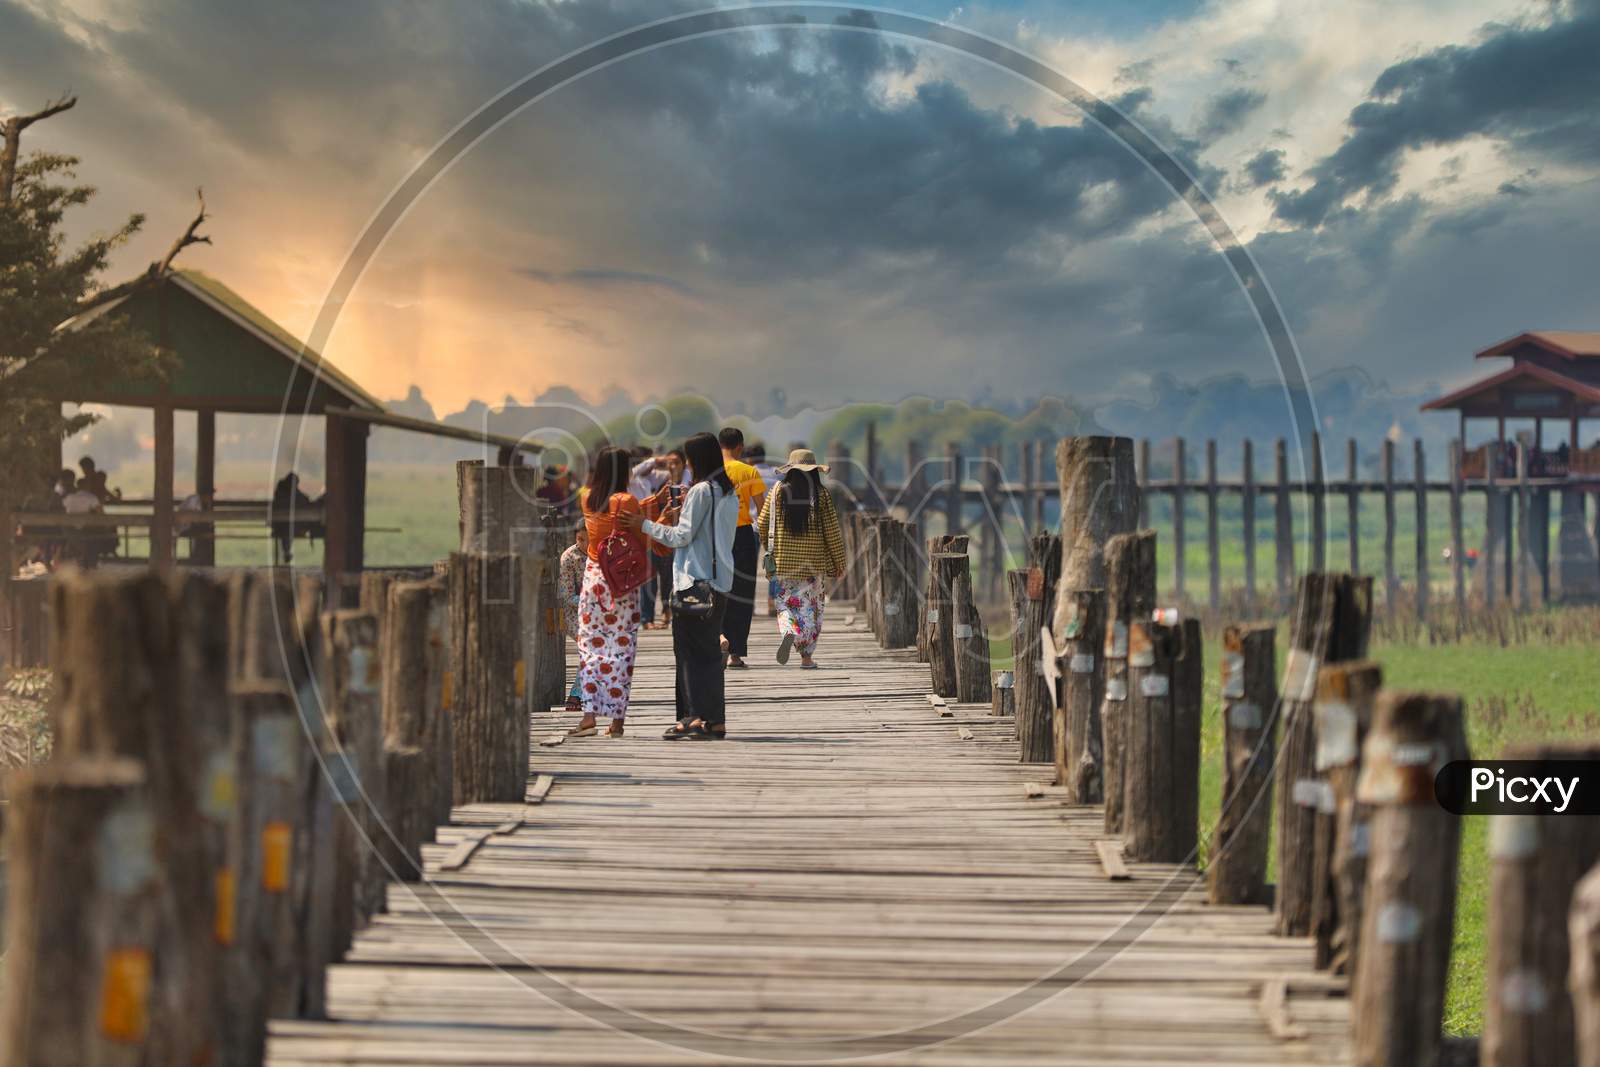 People walking on a Wooden Bridge